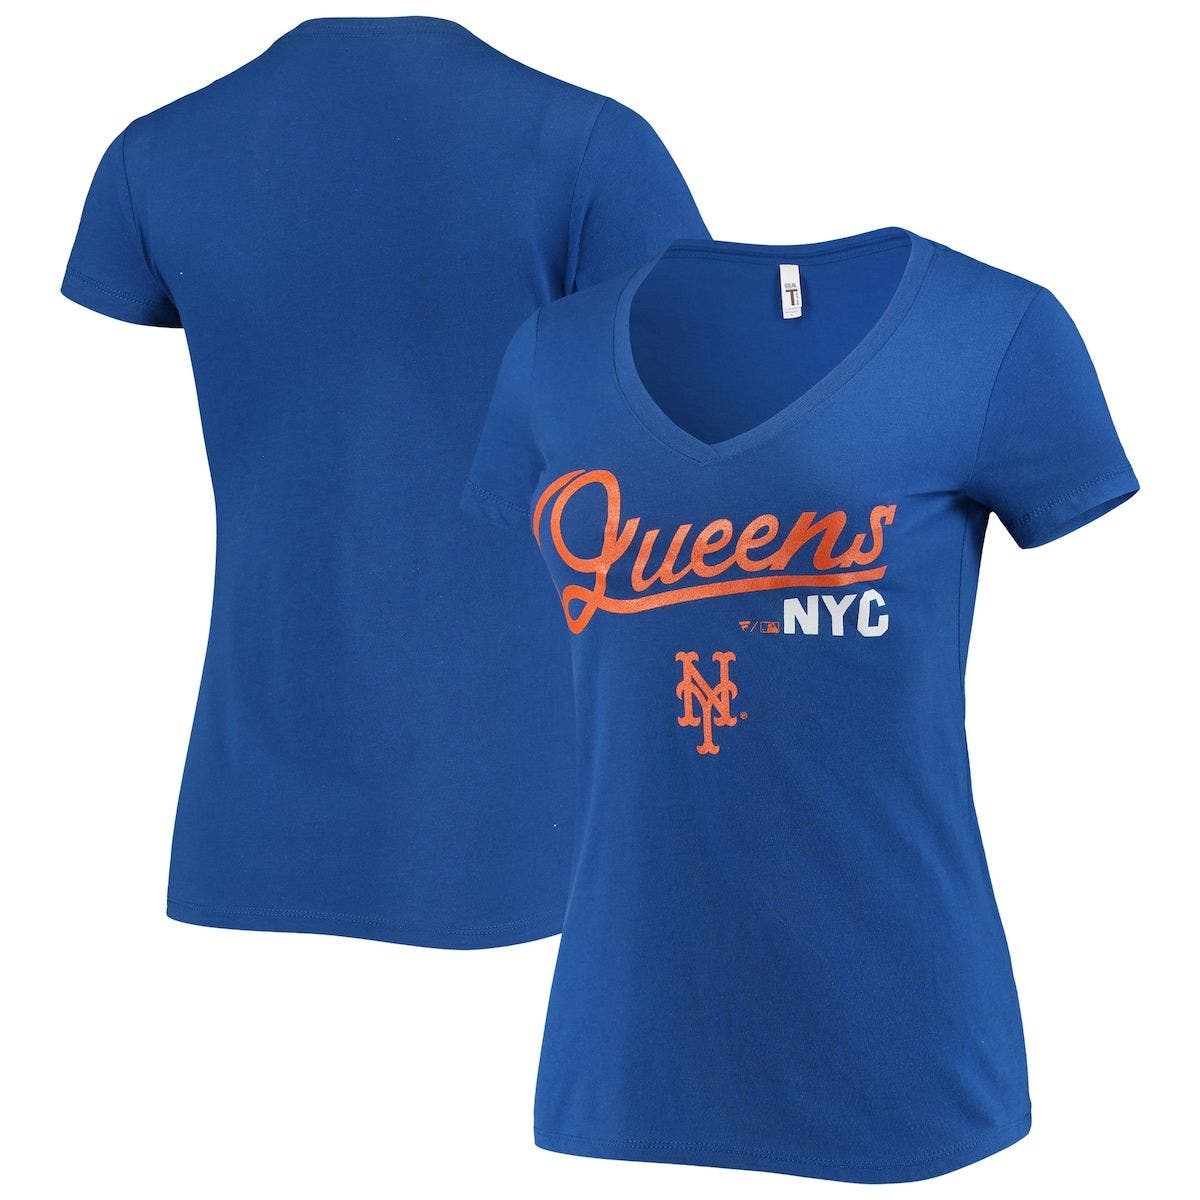 BREAKINGT Women's Royal New York Mets Queens NYC Hometown V-Neck T-Shirt at Nordstrom